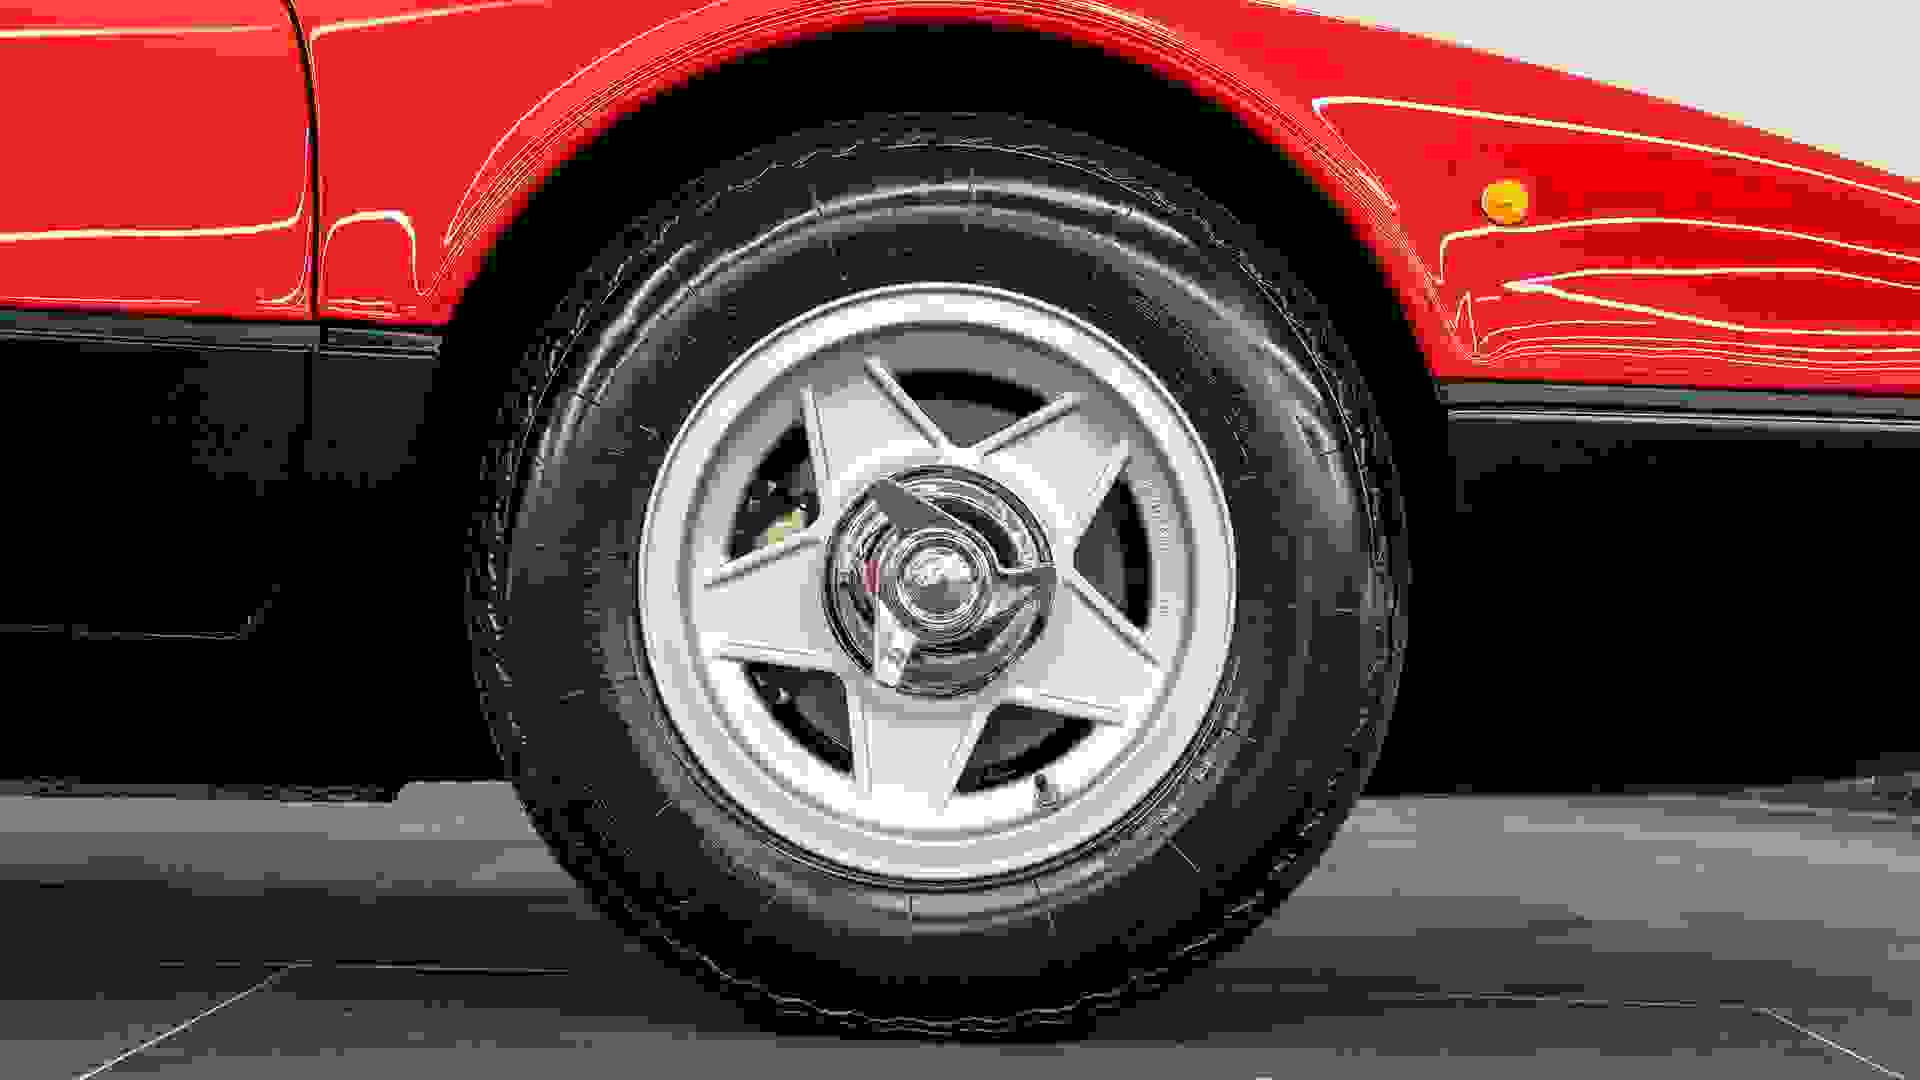 Ferrari 365 Photo 4a19a176-6c4a-4895-b5a2-3ce3d8f160f8.jpg